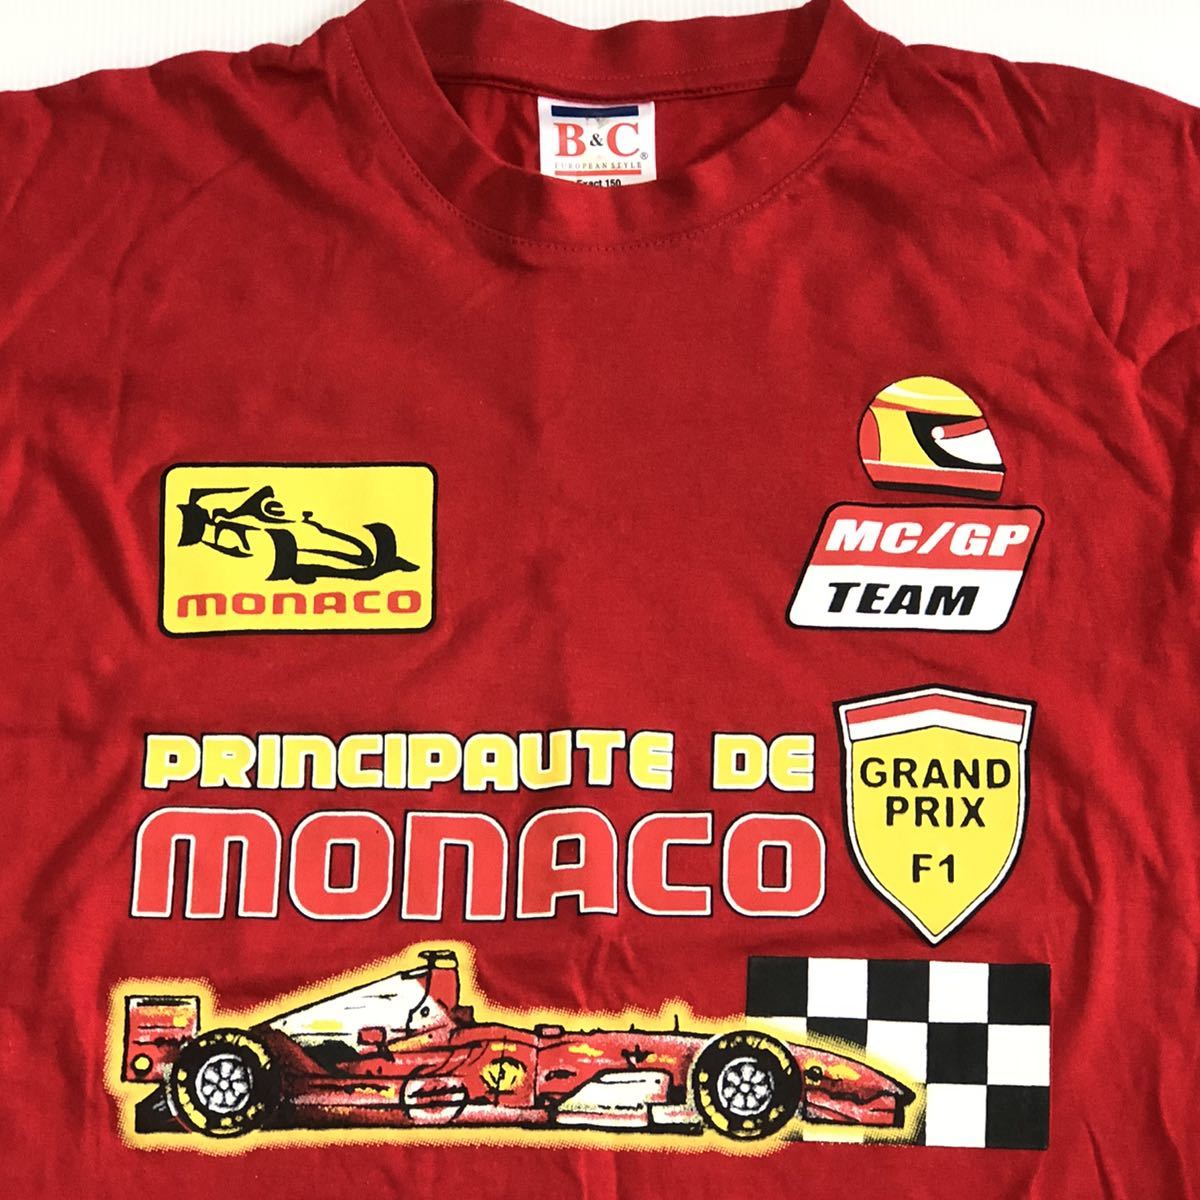 ◎ MONACO GRAND PRIX Tシャツ Sサイズ F1 MC/GP TEAM・world championship FORMULA ONE モナコ グランドプリックス レーシングチームの画像2